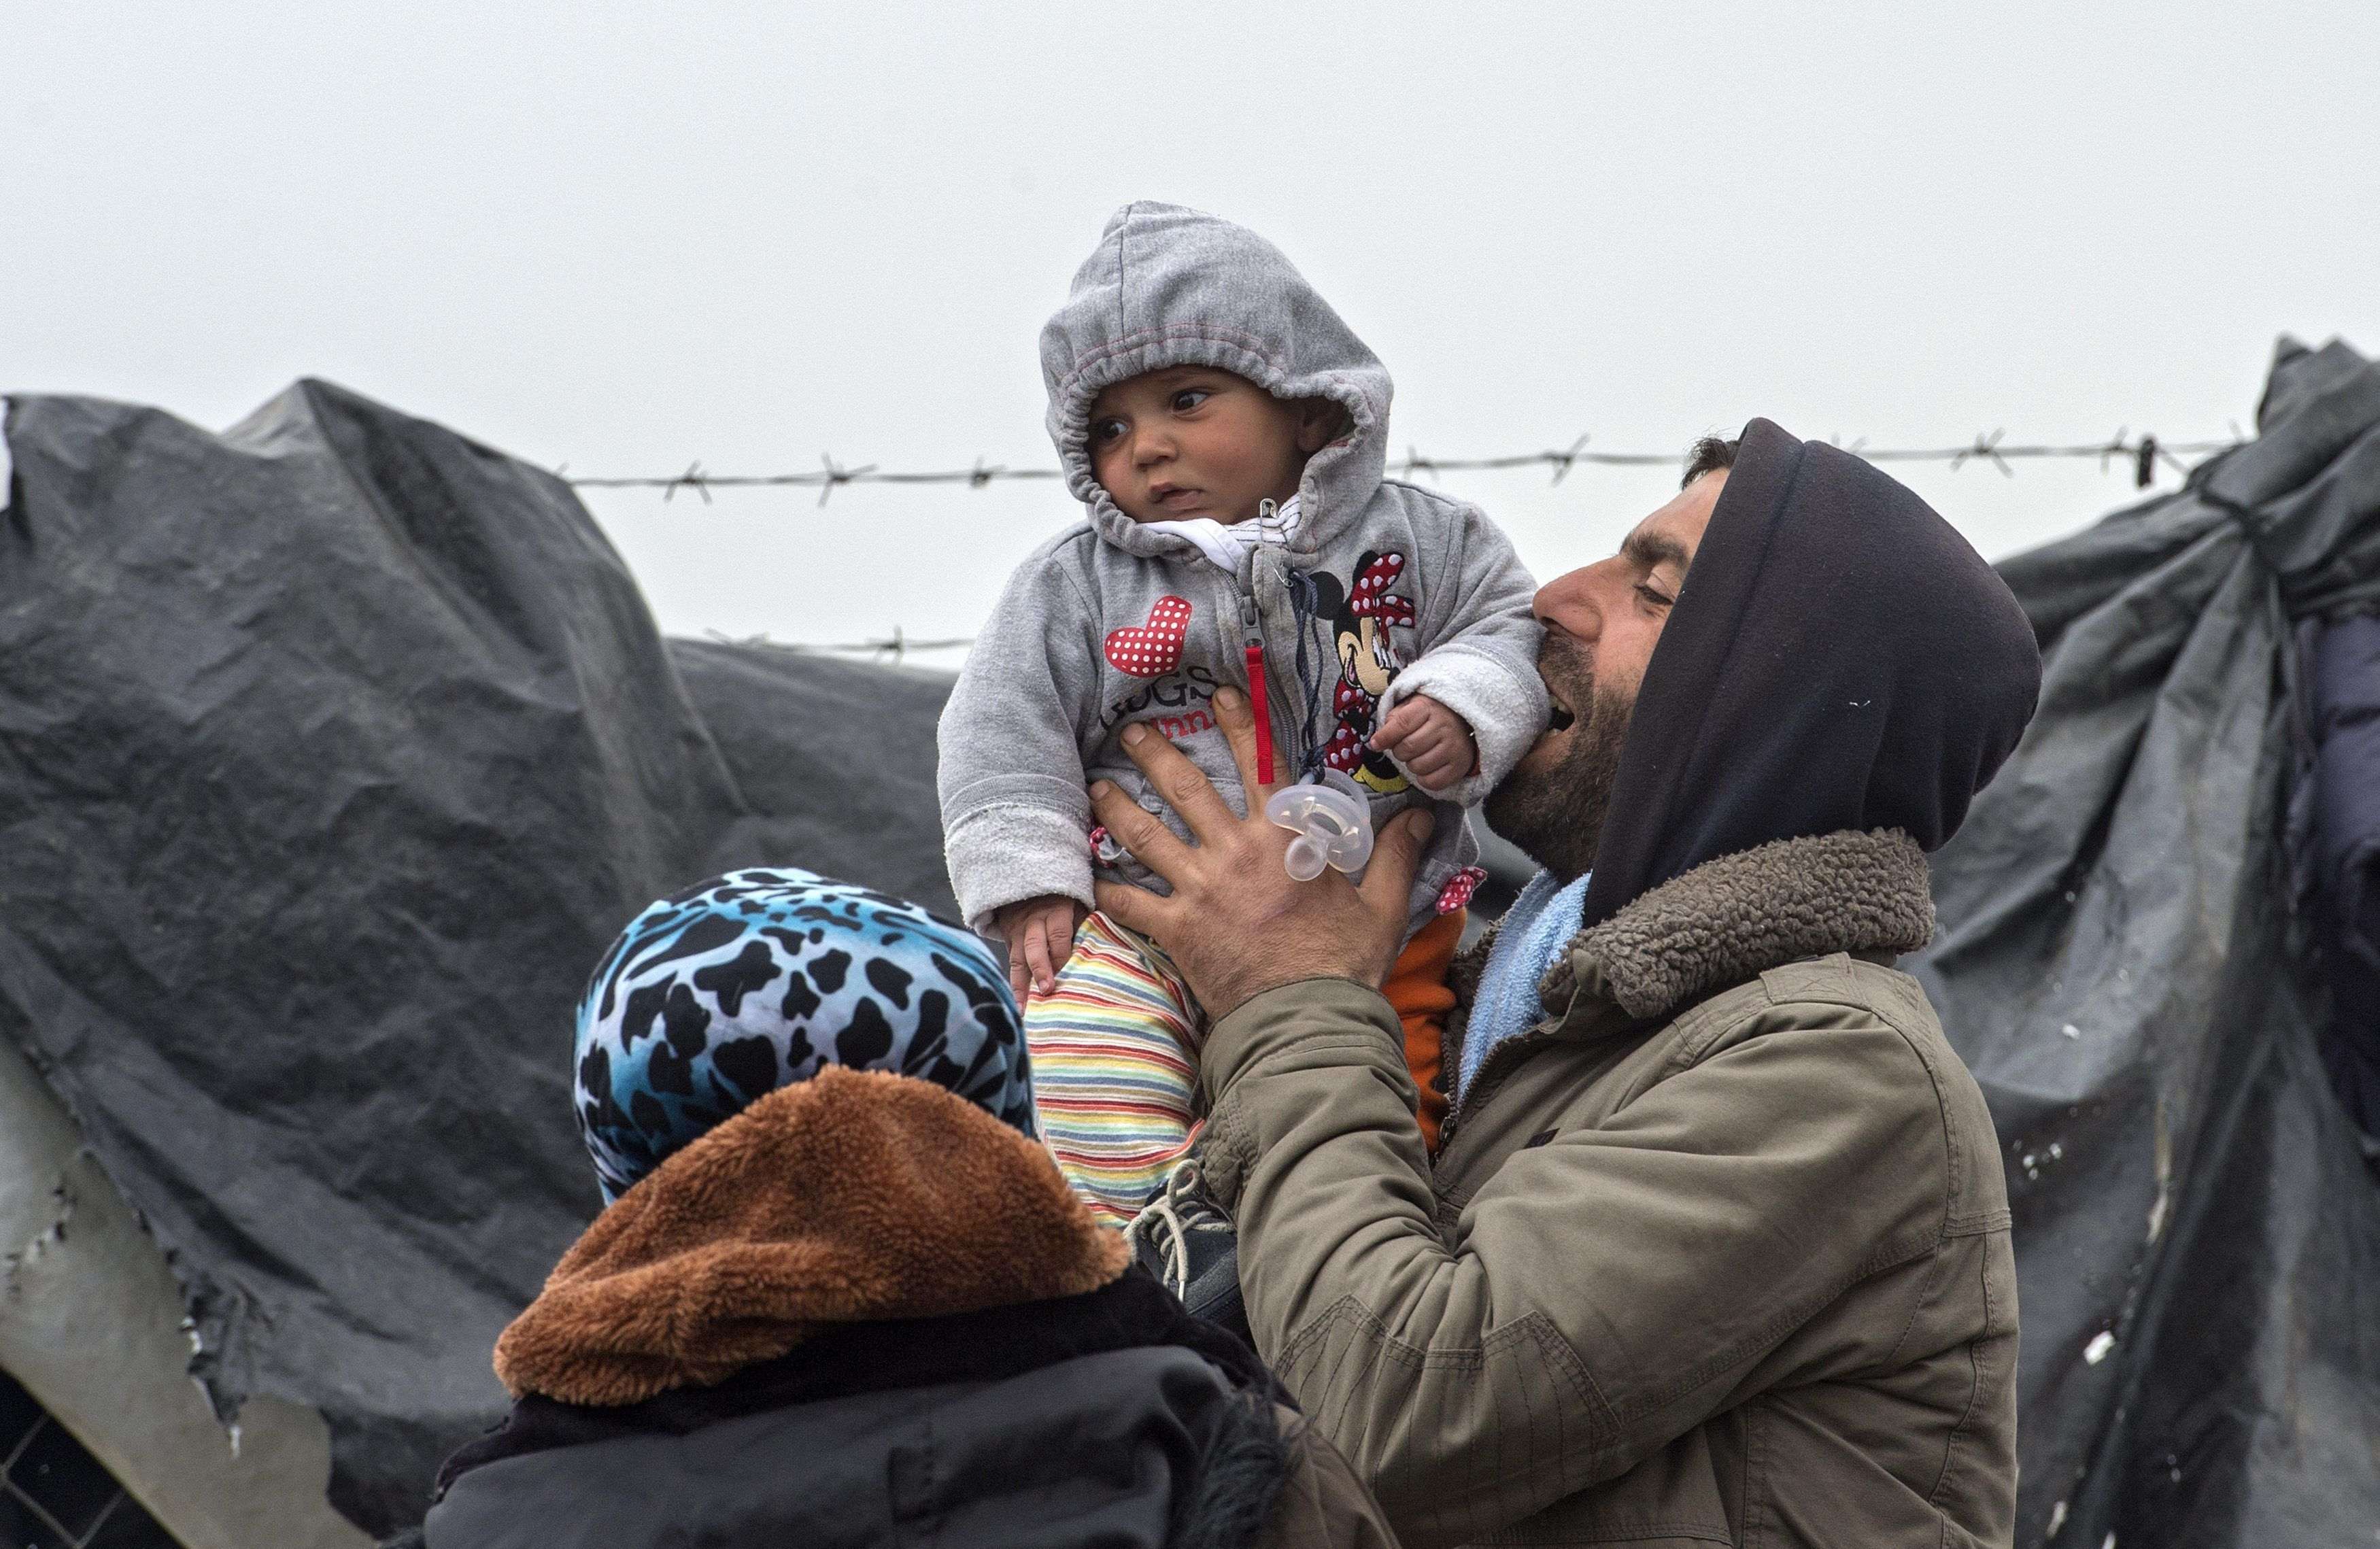 Comença el retorn de refugiats, tot i els dubtes legals i humanitaris